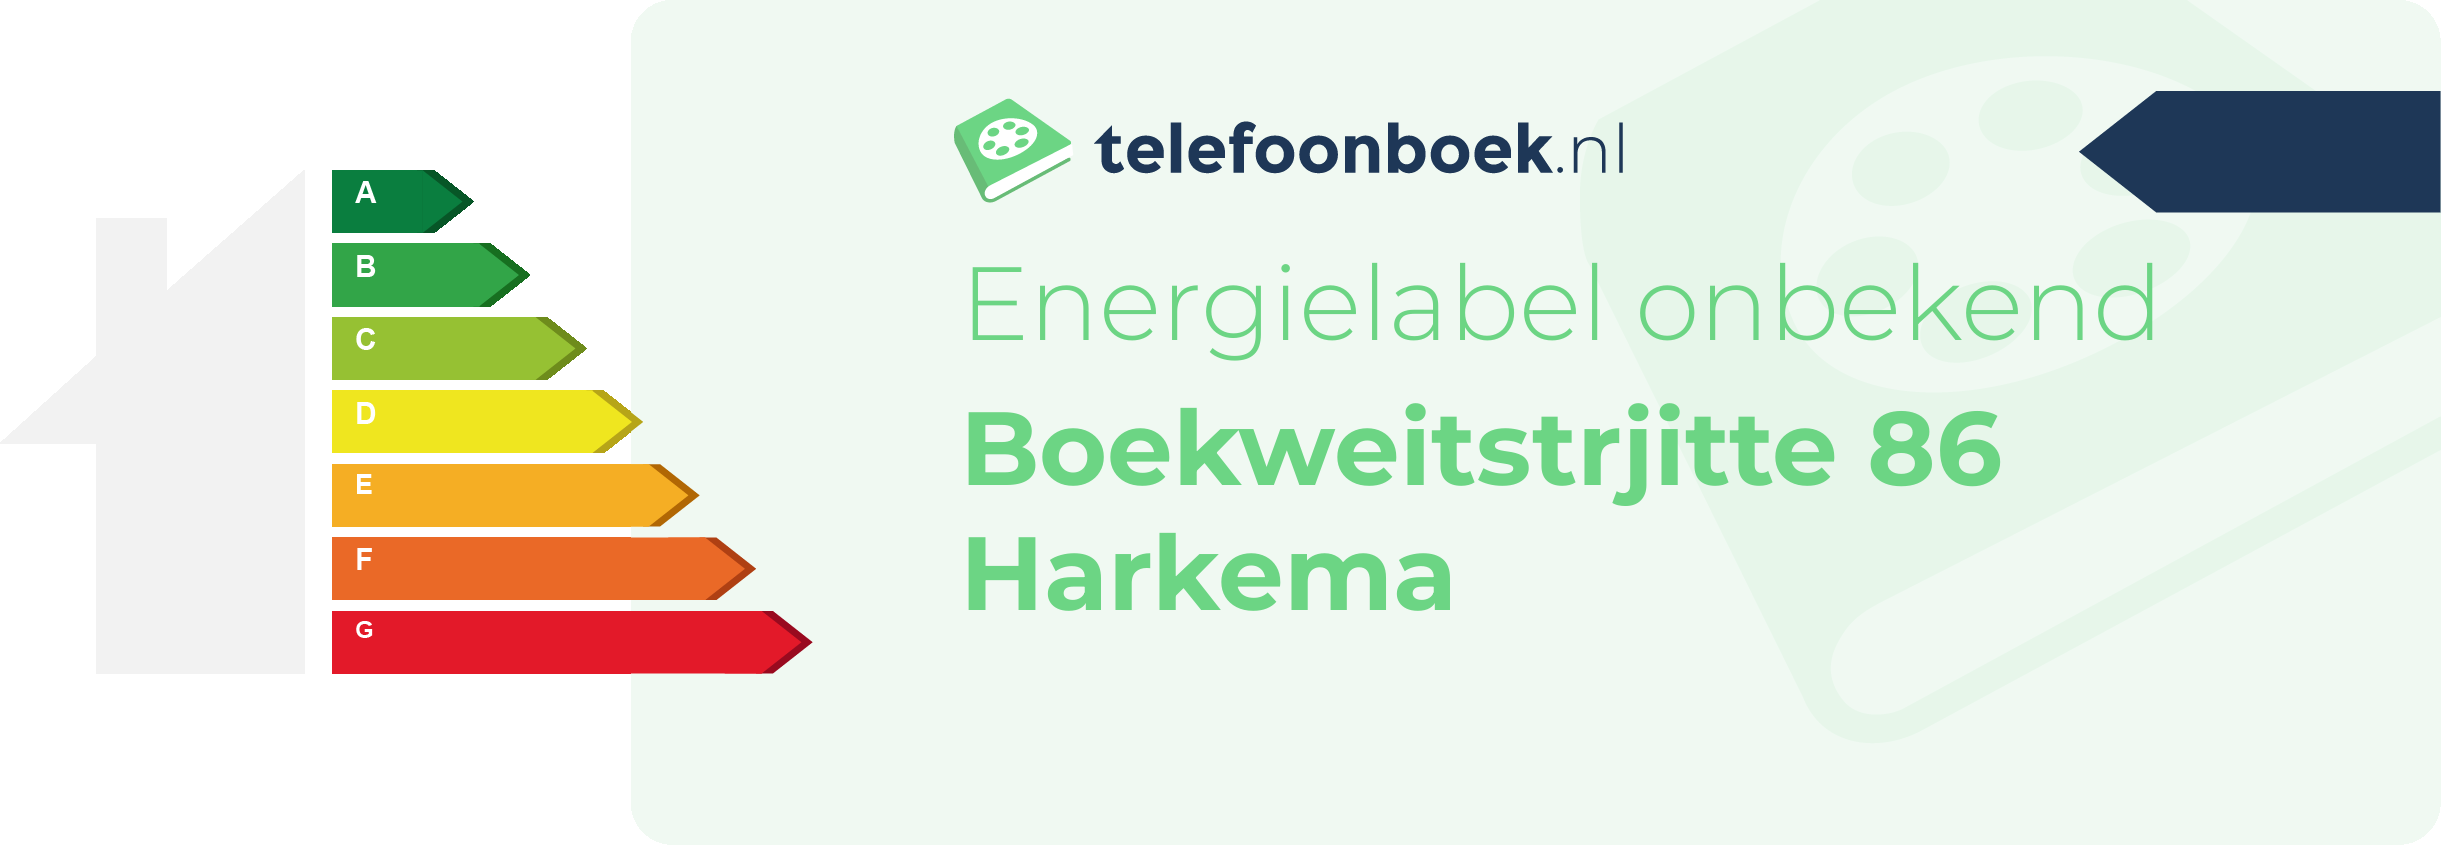 Energielabel Boekweitstrjitte 86 Harkema